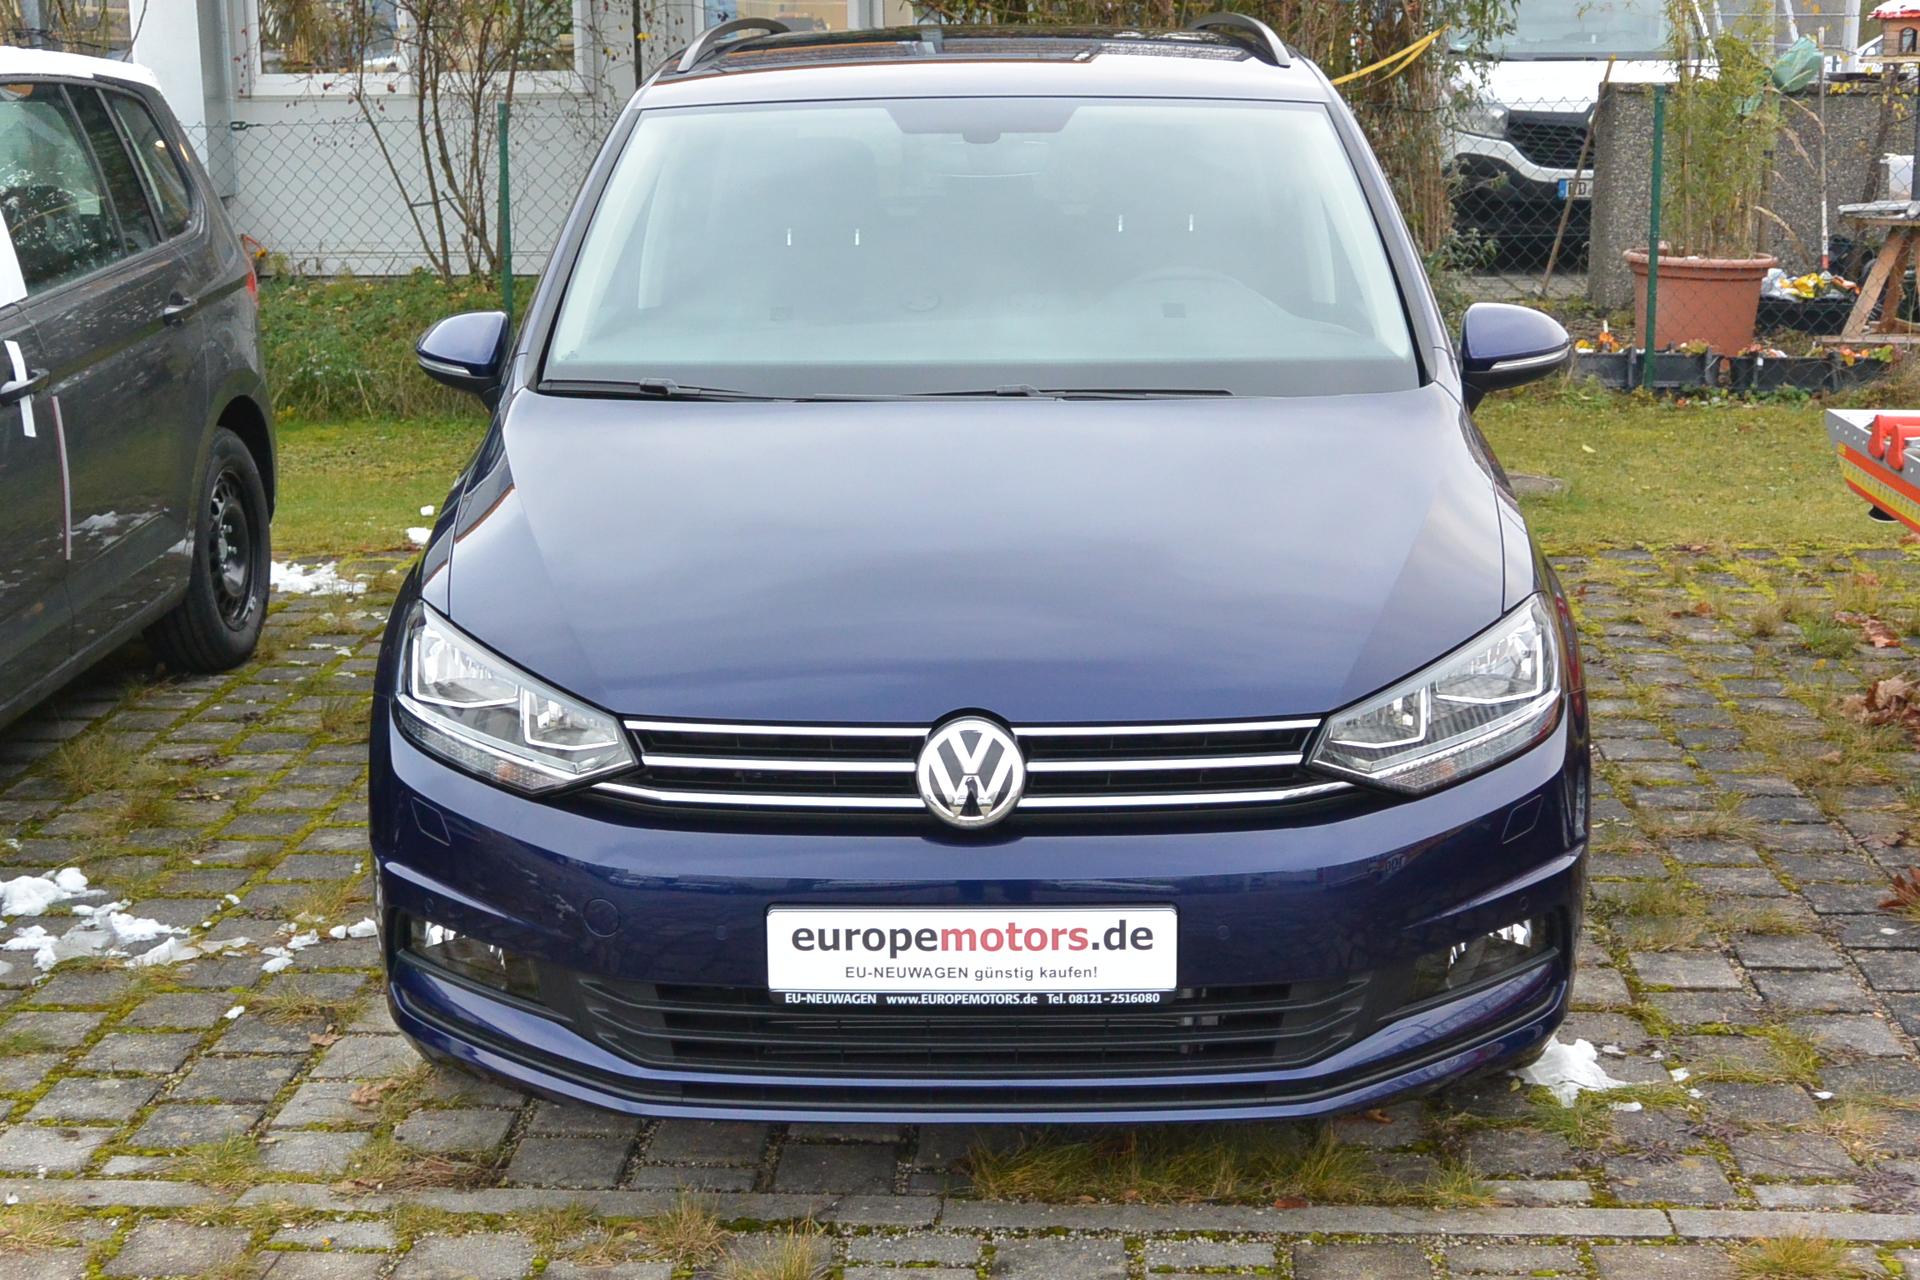 VW Touran EU-Neuwagen günstig kaufen bei europemotors.de GmbH in Neufinsing bei München